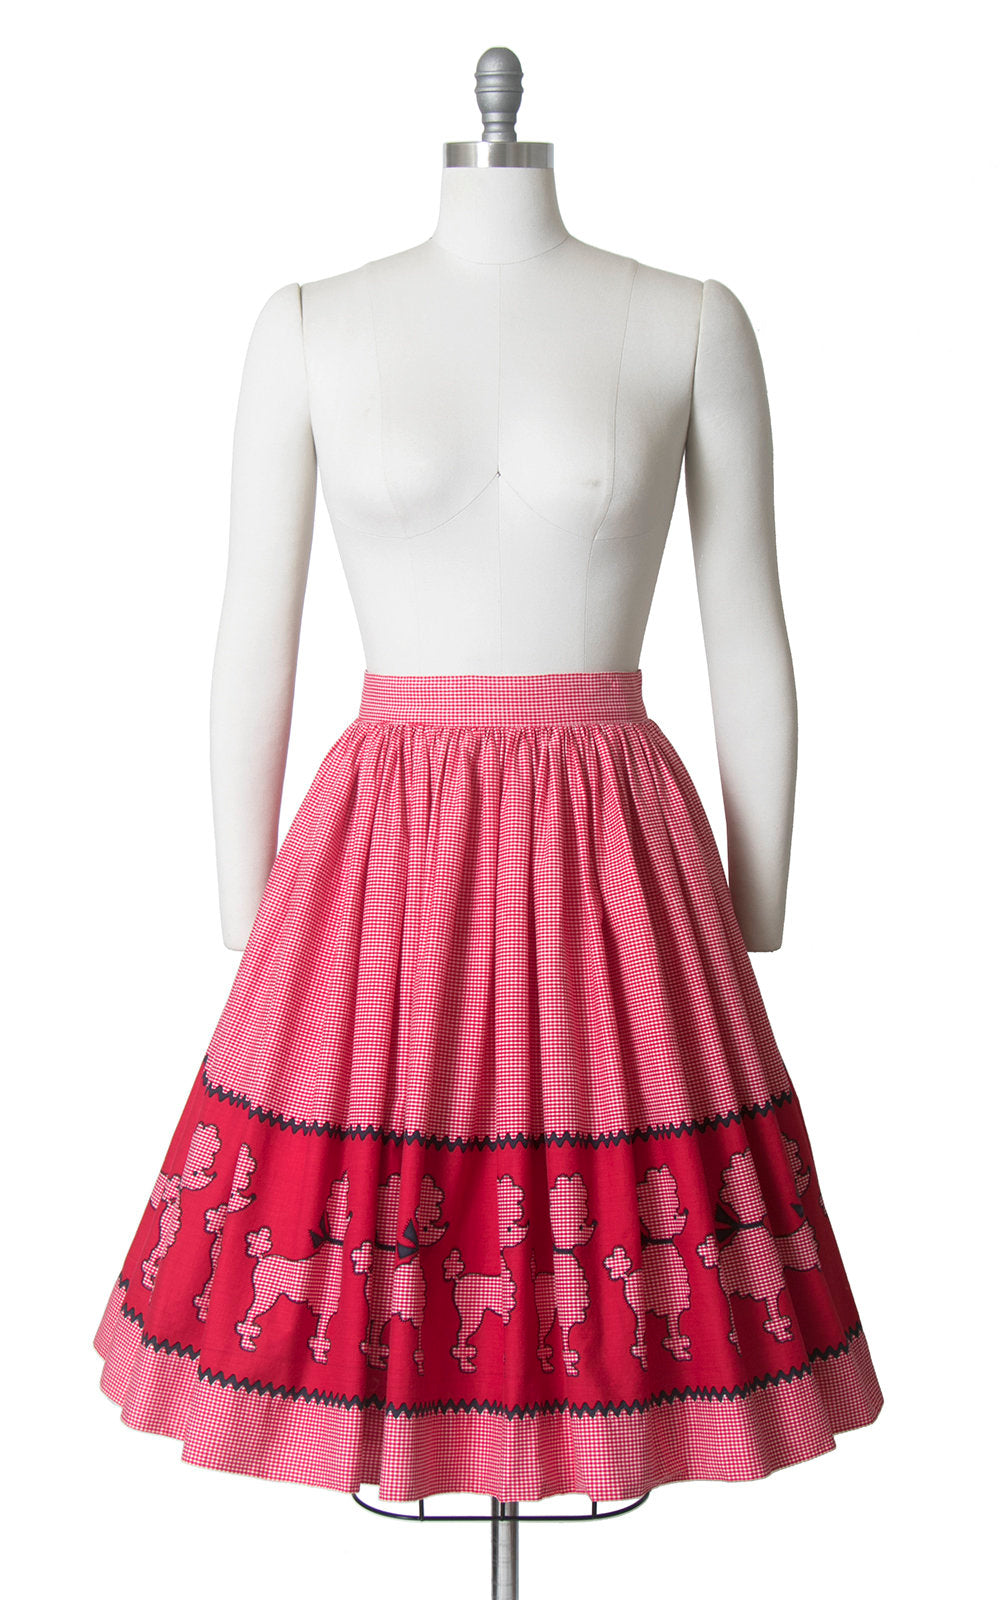 Vintage 1950s Skirt | 50s Poodle Novelty Border Print Cotton Red Gingham Full Swing Skirt (medium)